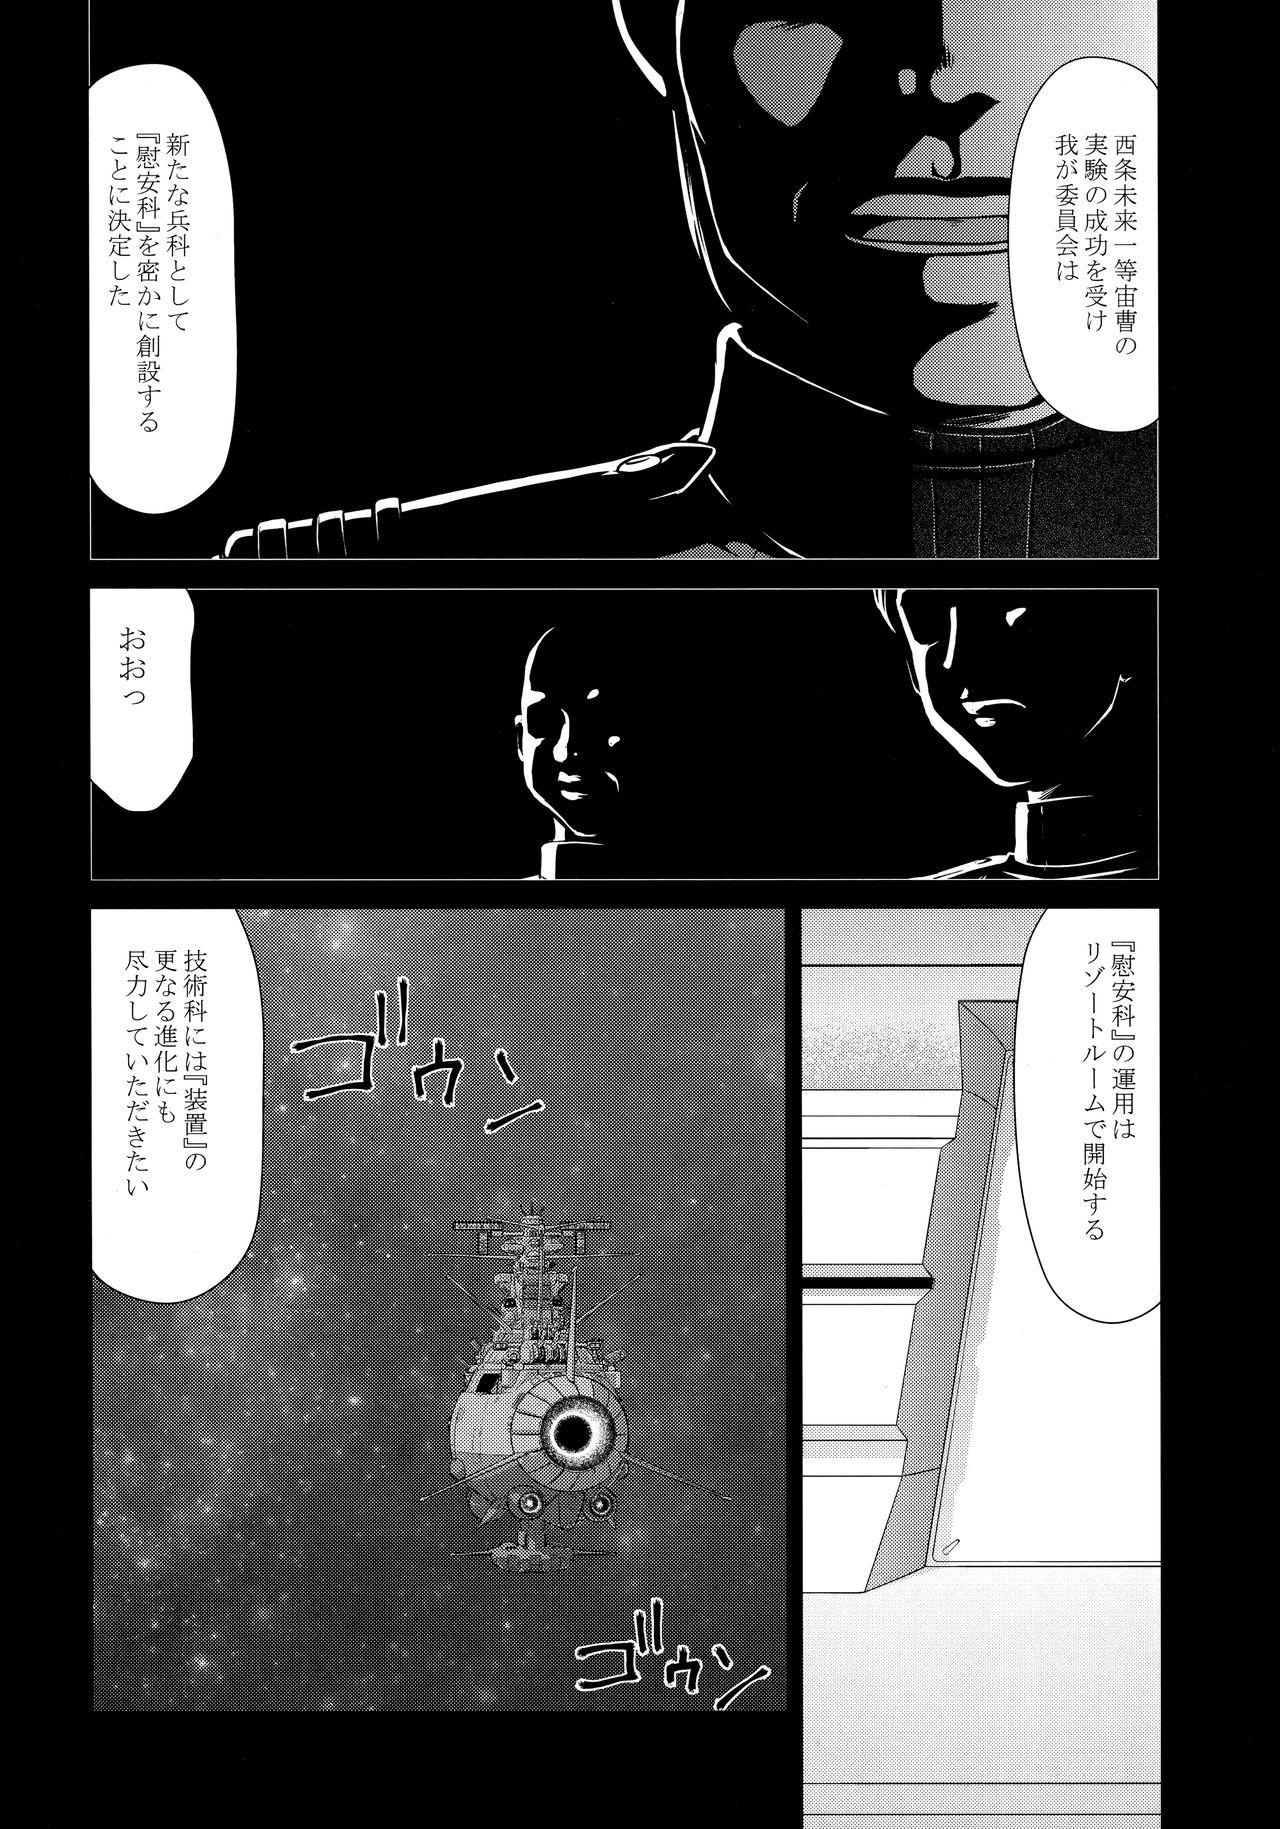 Boobs Yuki no Shizuku Mesu - Space battleship yamato Space battleship yamato 2199 Calle - Page 11